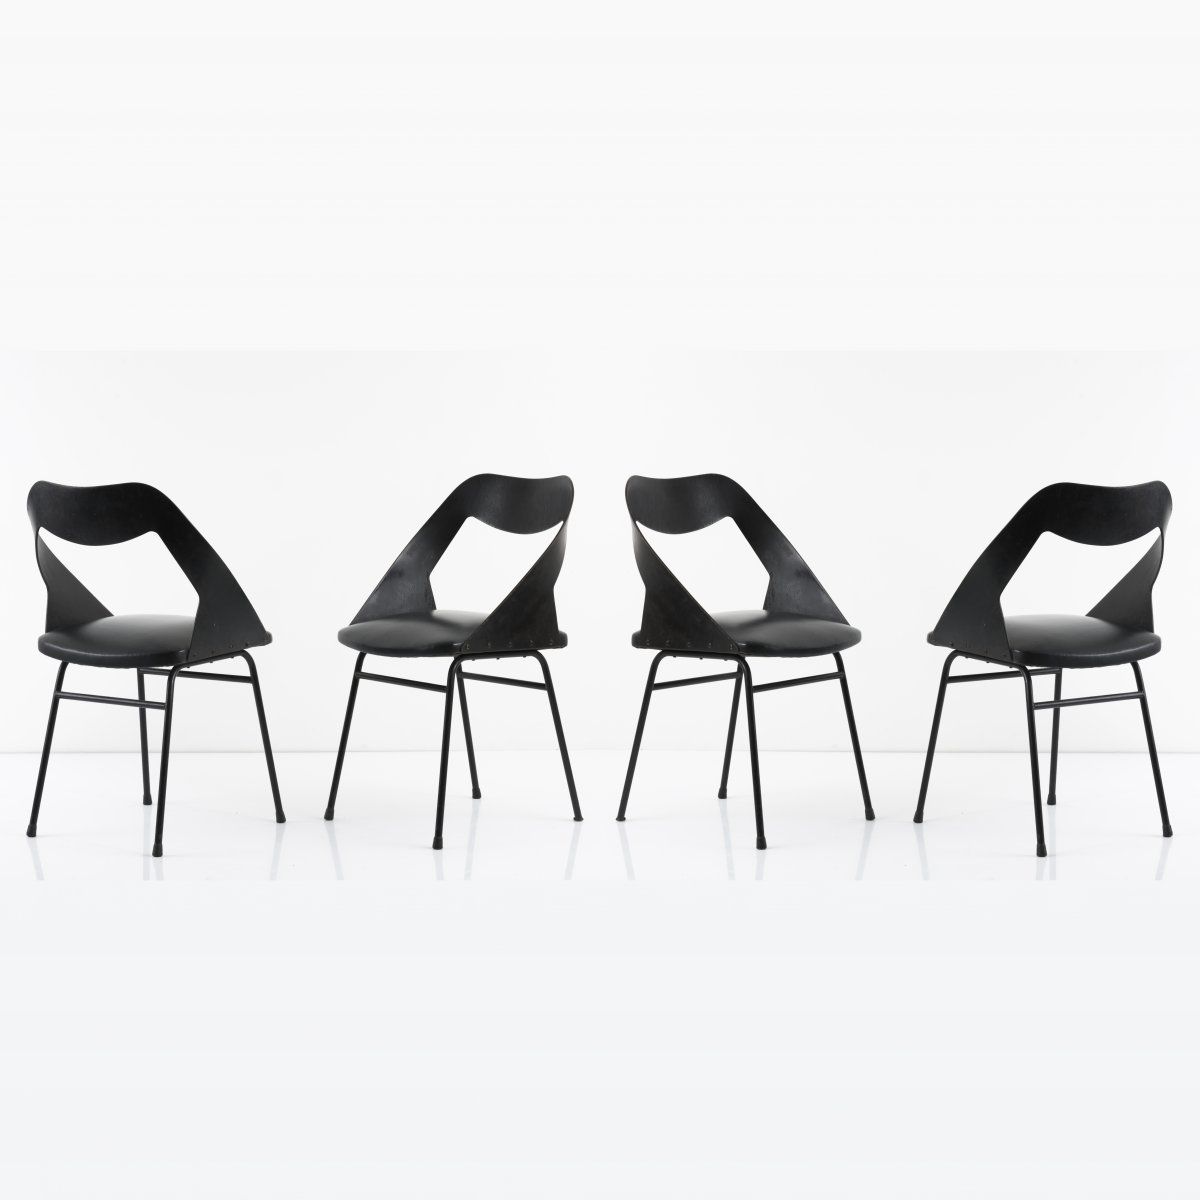 Null 路易斯-保罗齐，4把椅子，约1958年，高78.5×50×47厘米。由法国Zol公司制造。管状金属，涂黑，胶合板，涂黑，黑色皮革。